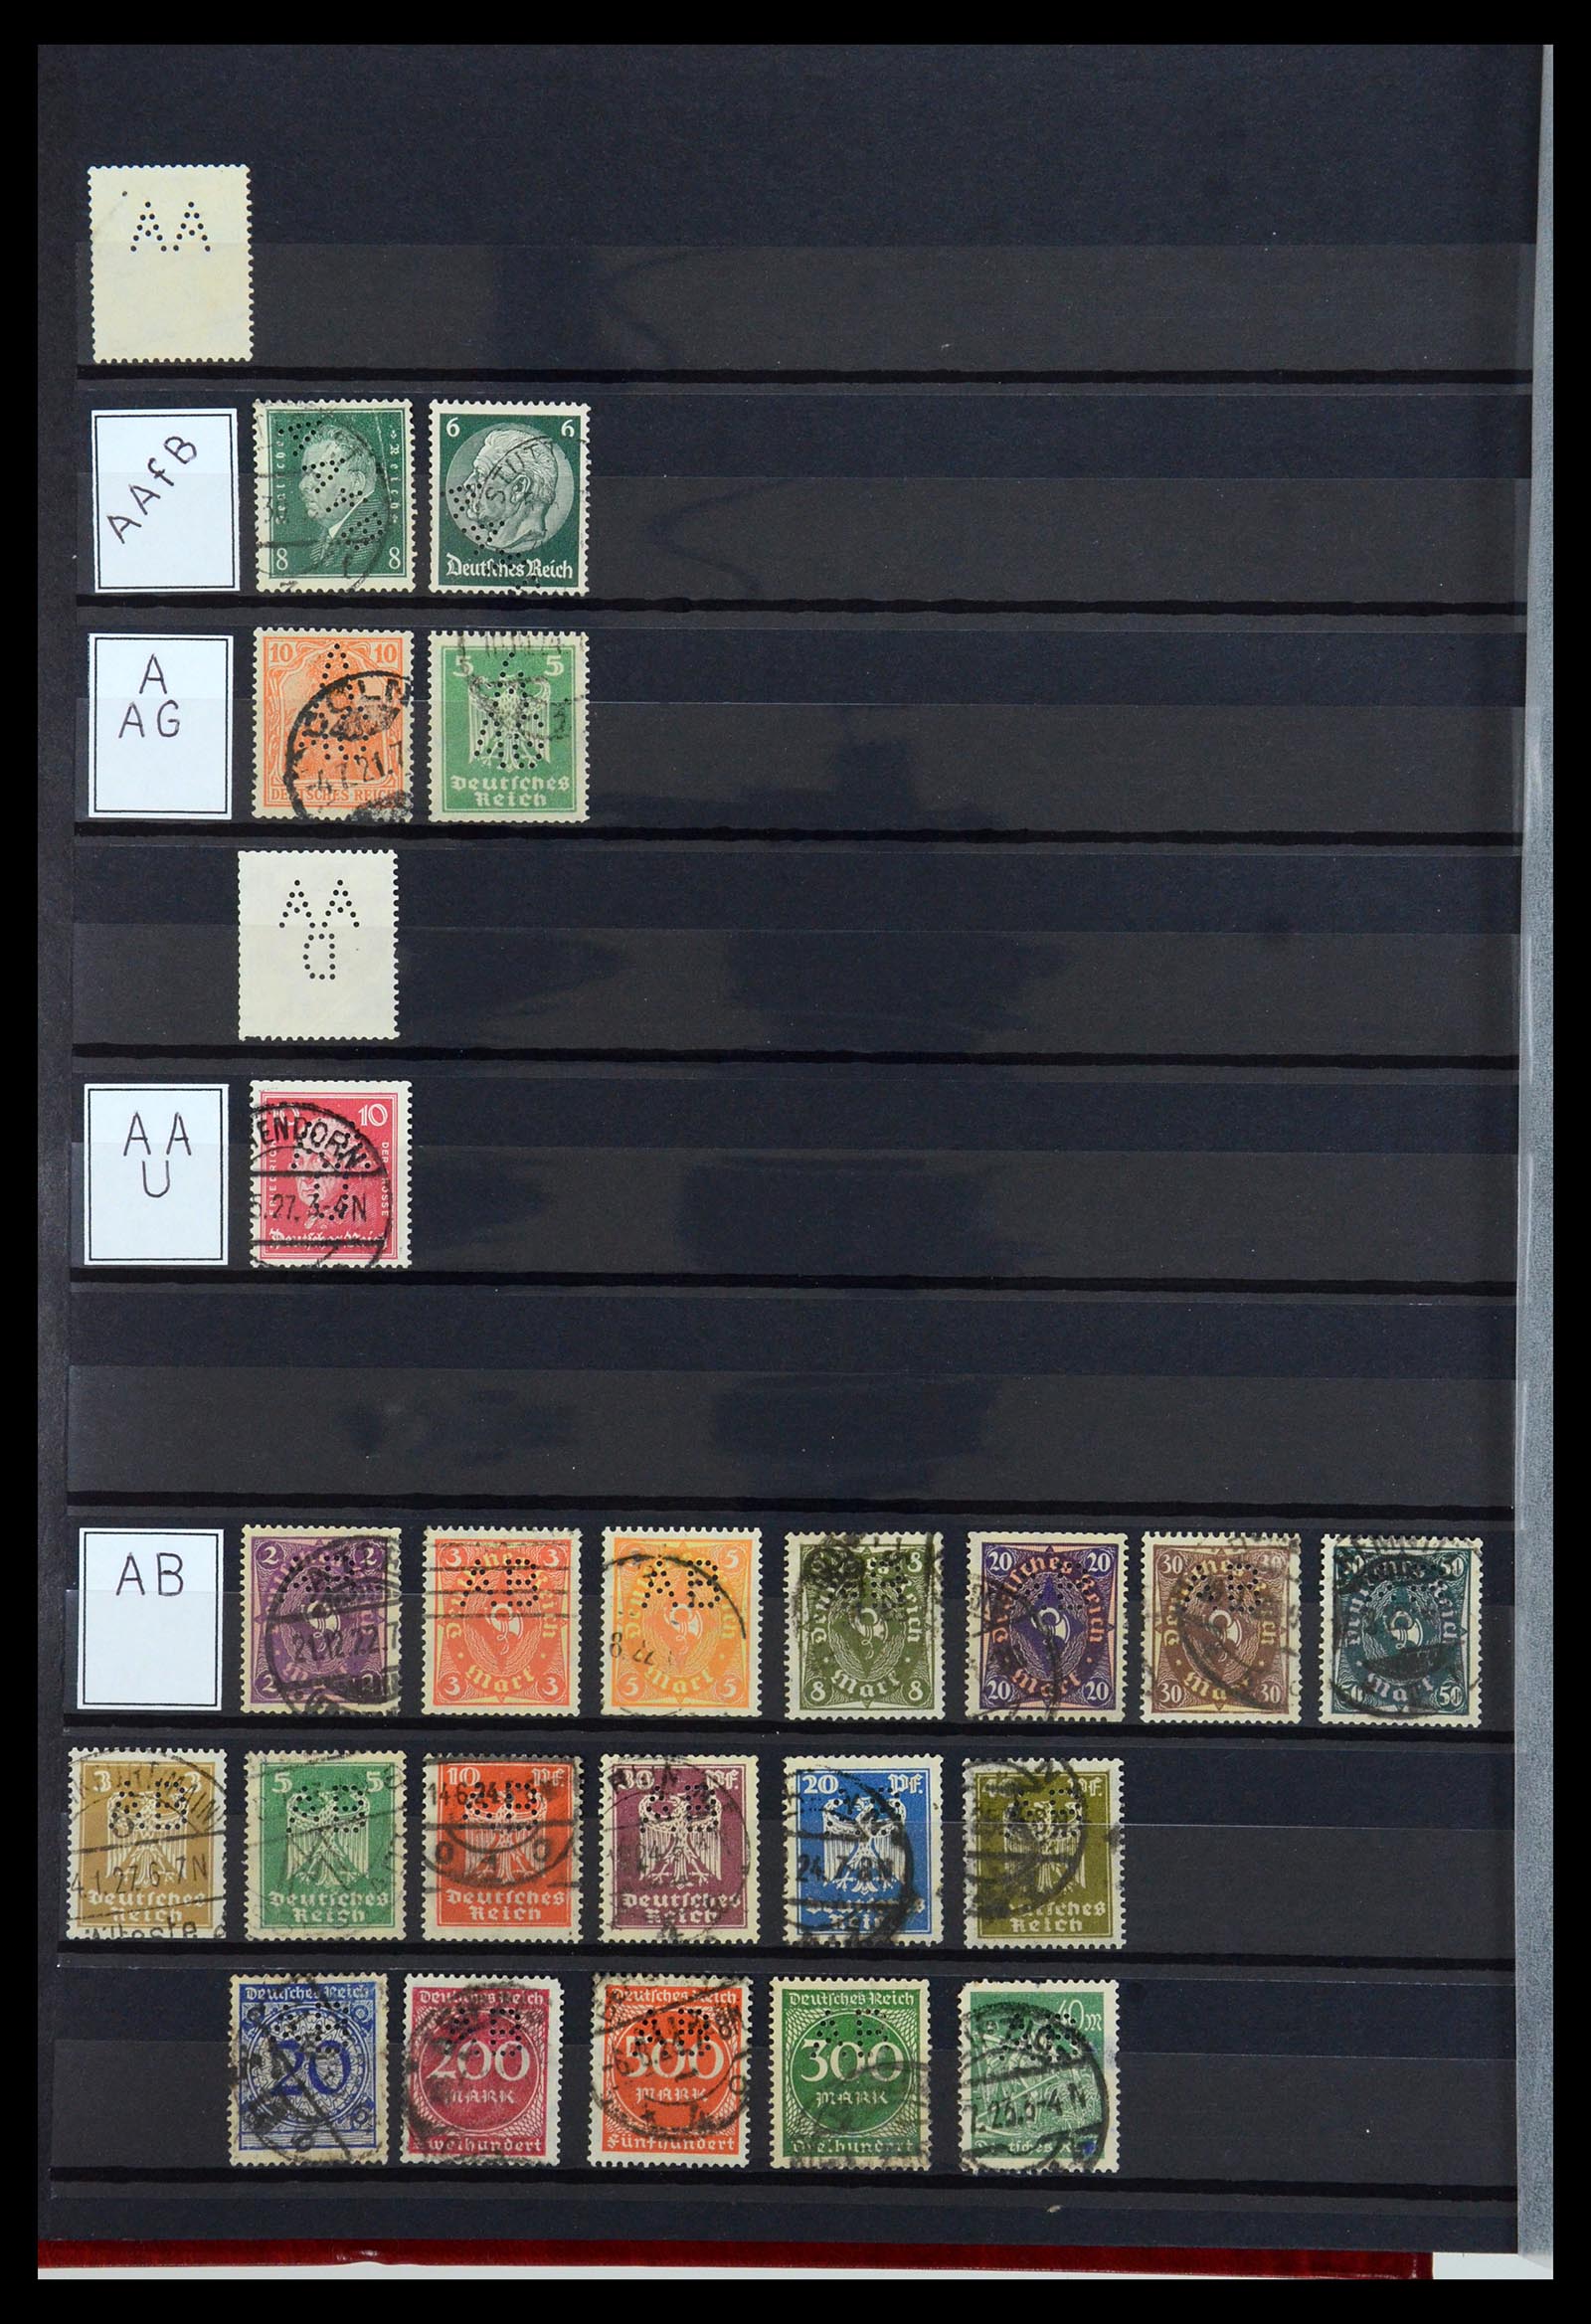 36405 002 - Stamp collection 36405 German Reich perfins 1880-1945.